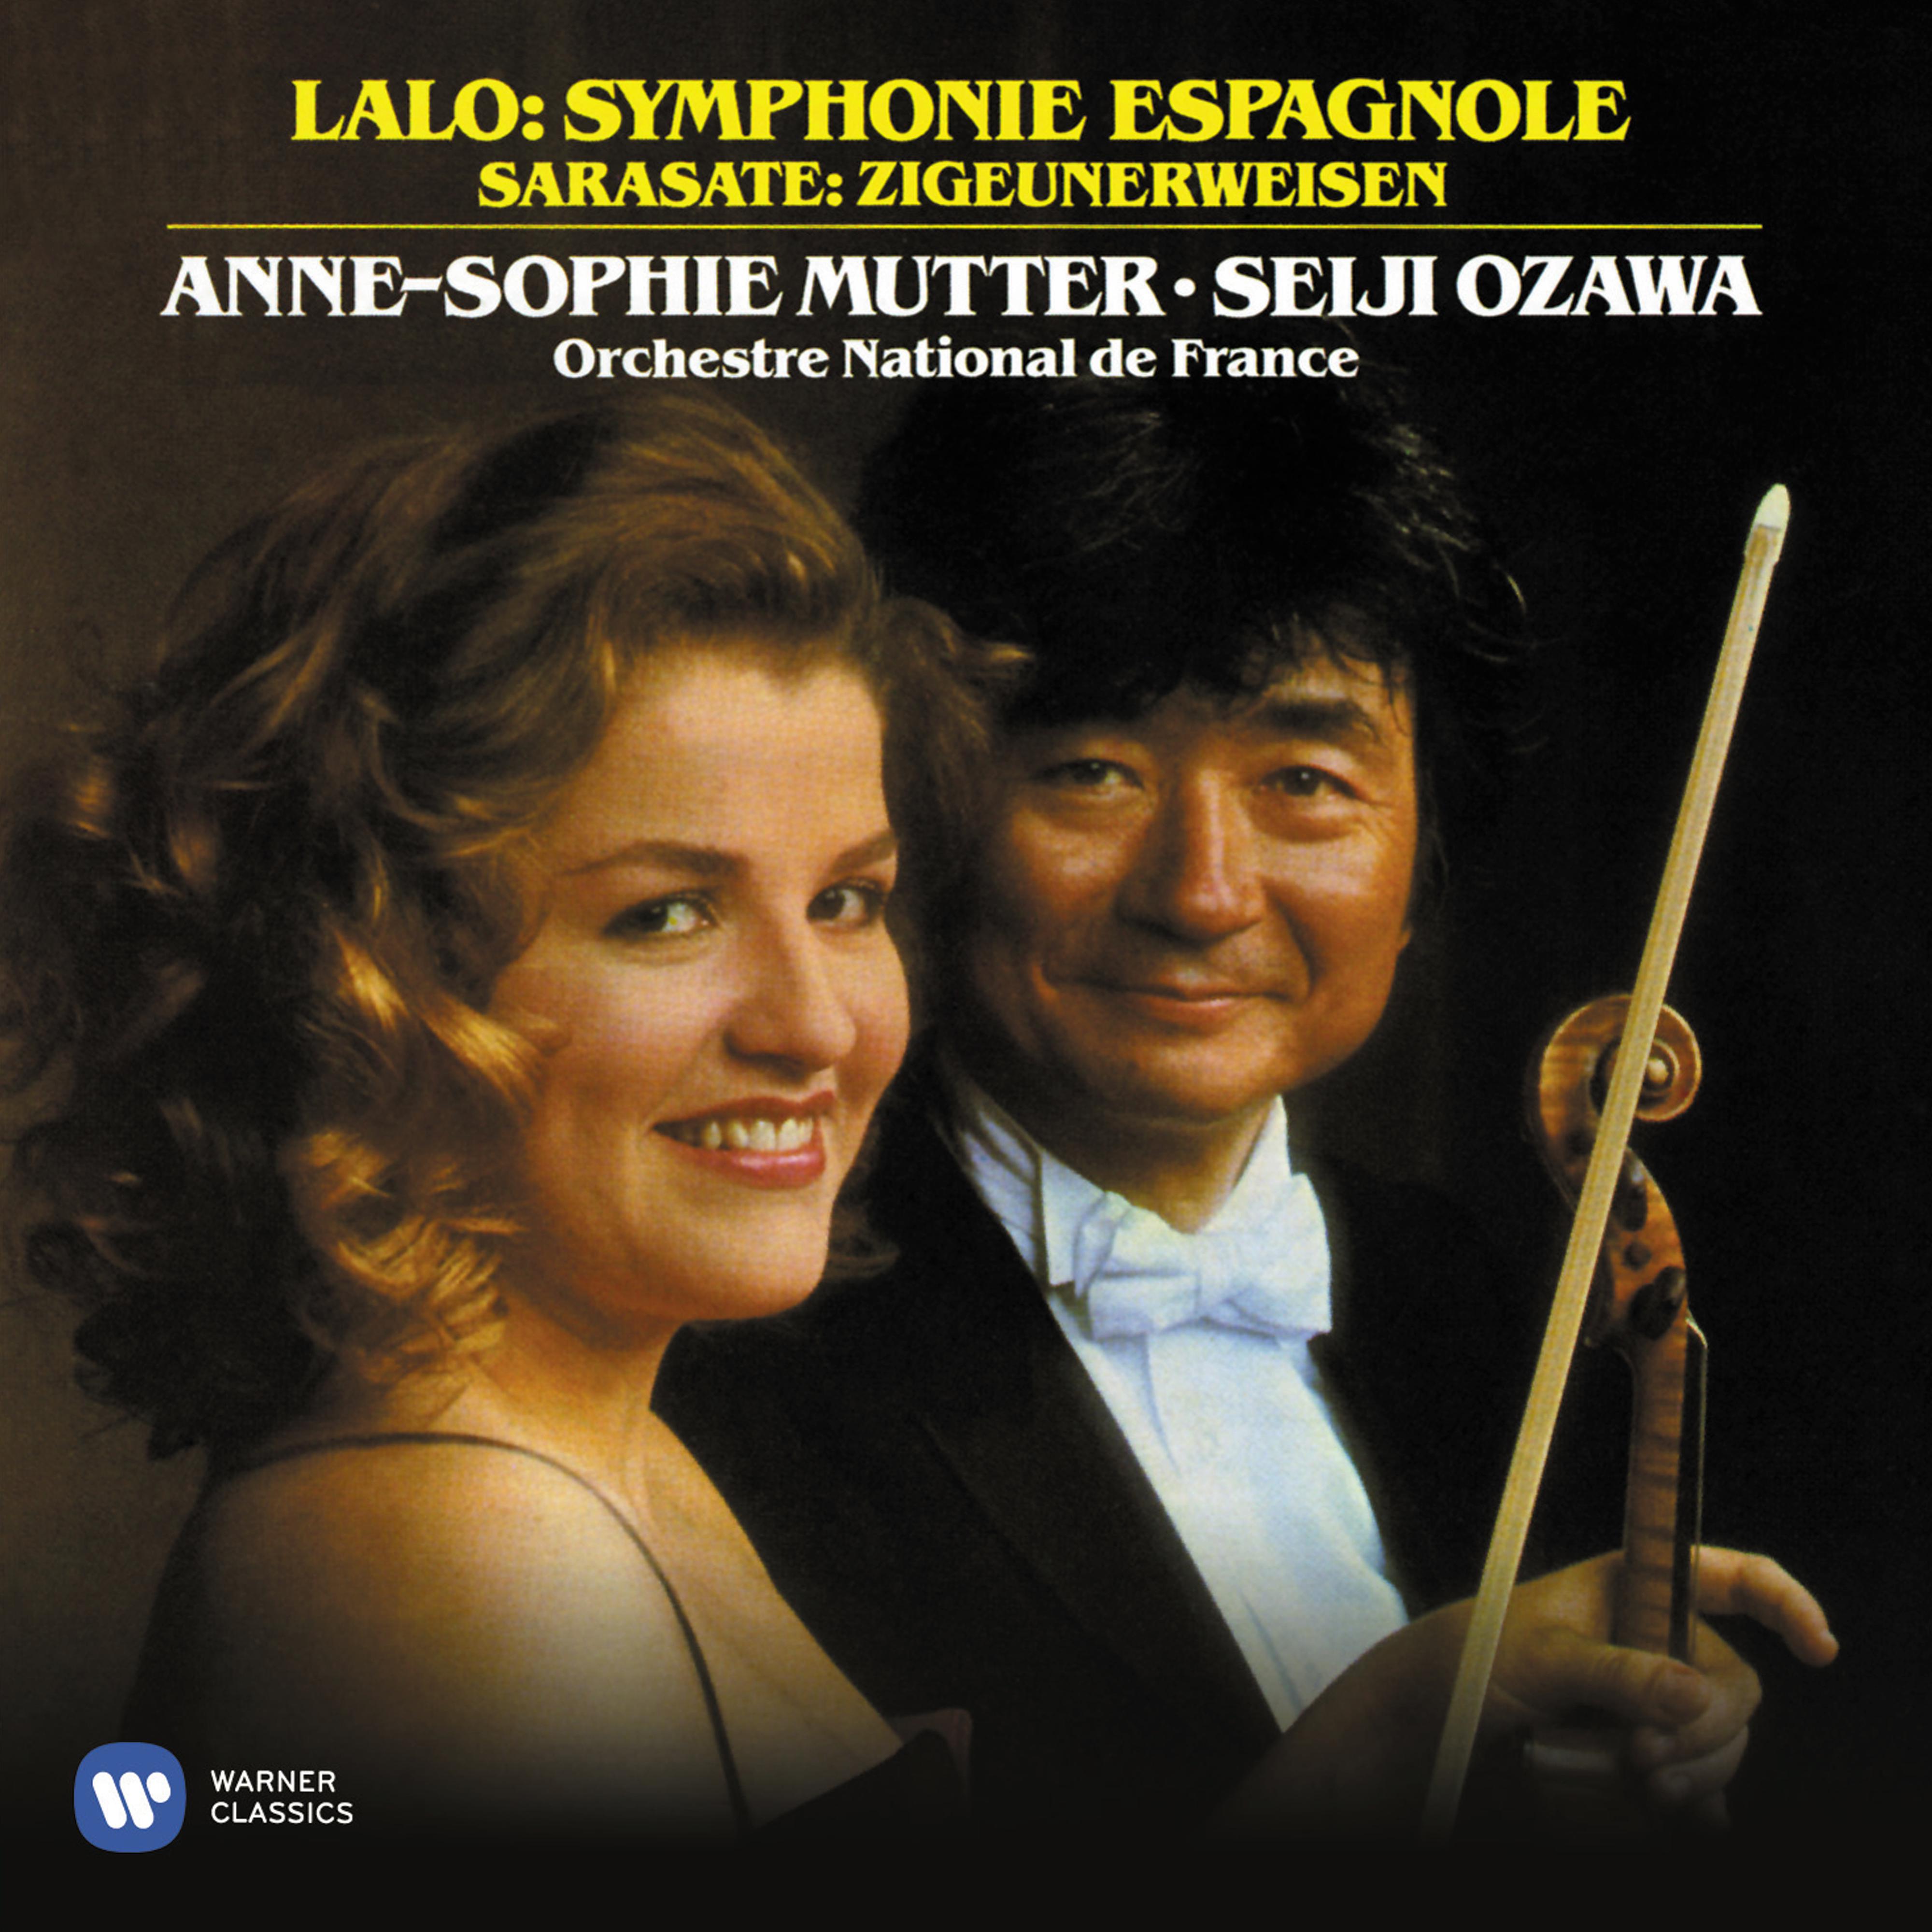 Symphonie espagnole, Op. 21: III. Intermezzo. Allegro non troppo